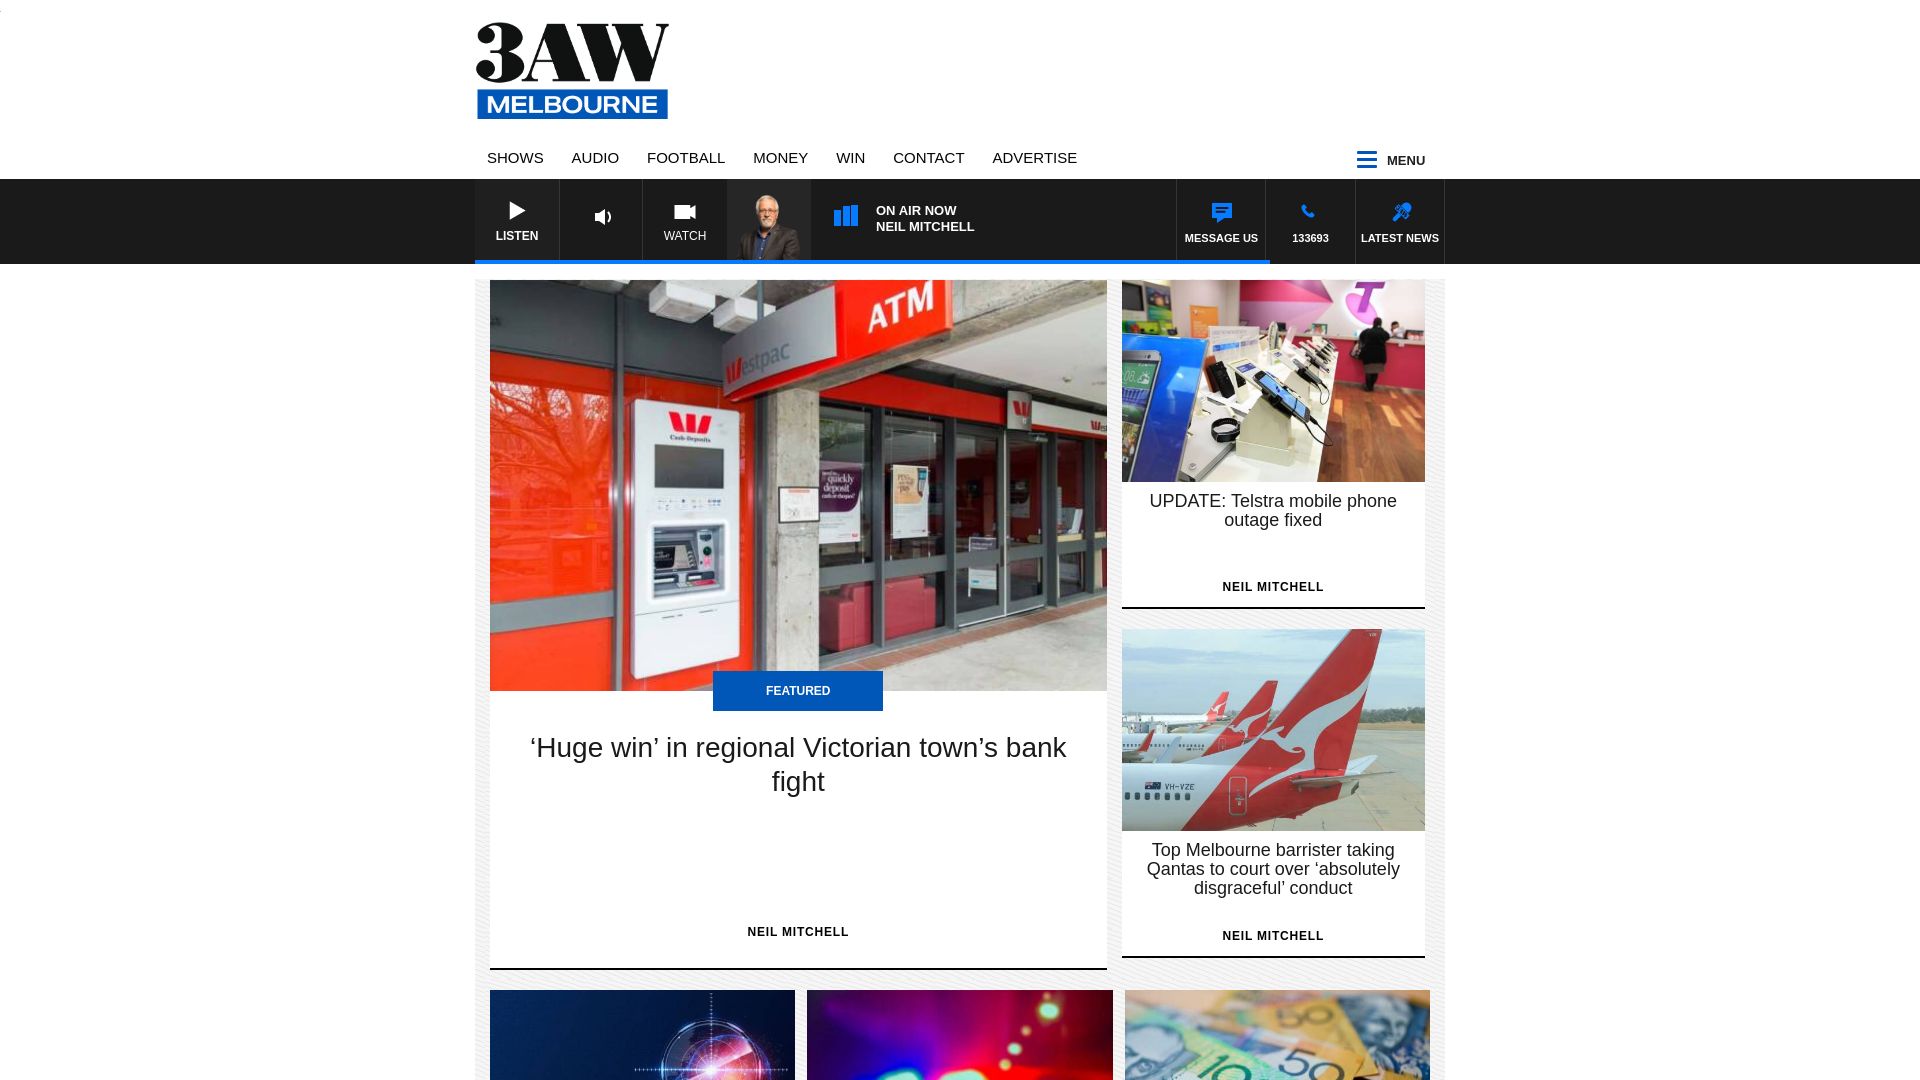 Webseitenstatus 3aw.com.au ist   ONLINE